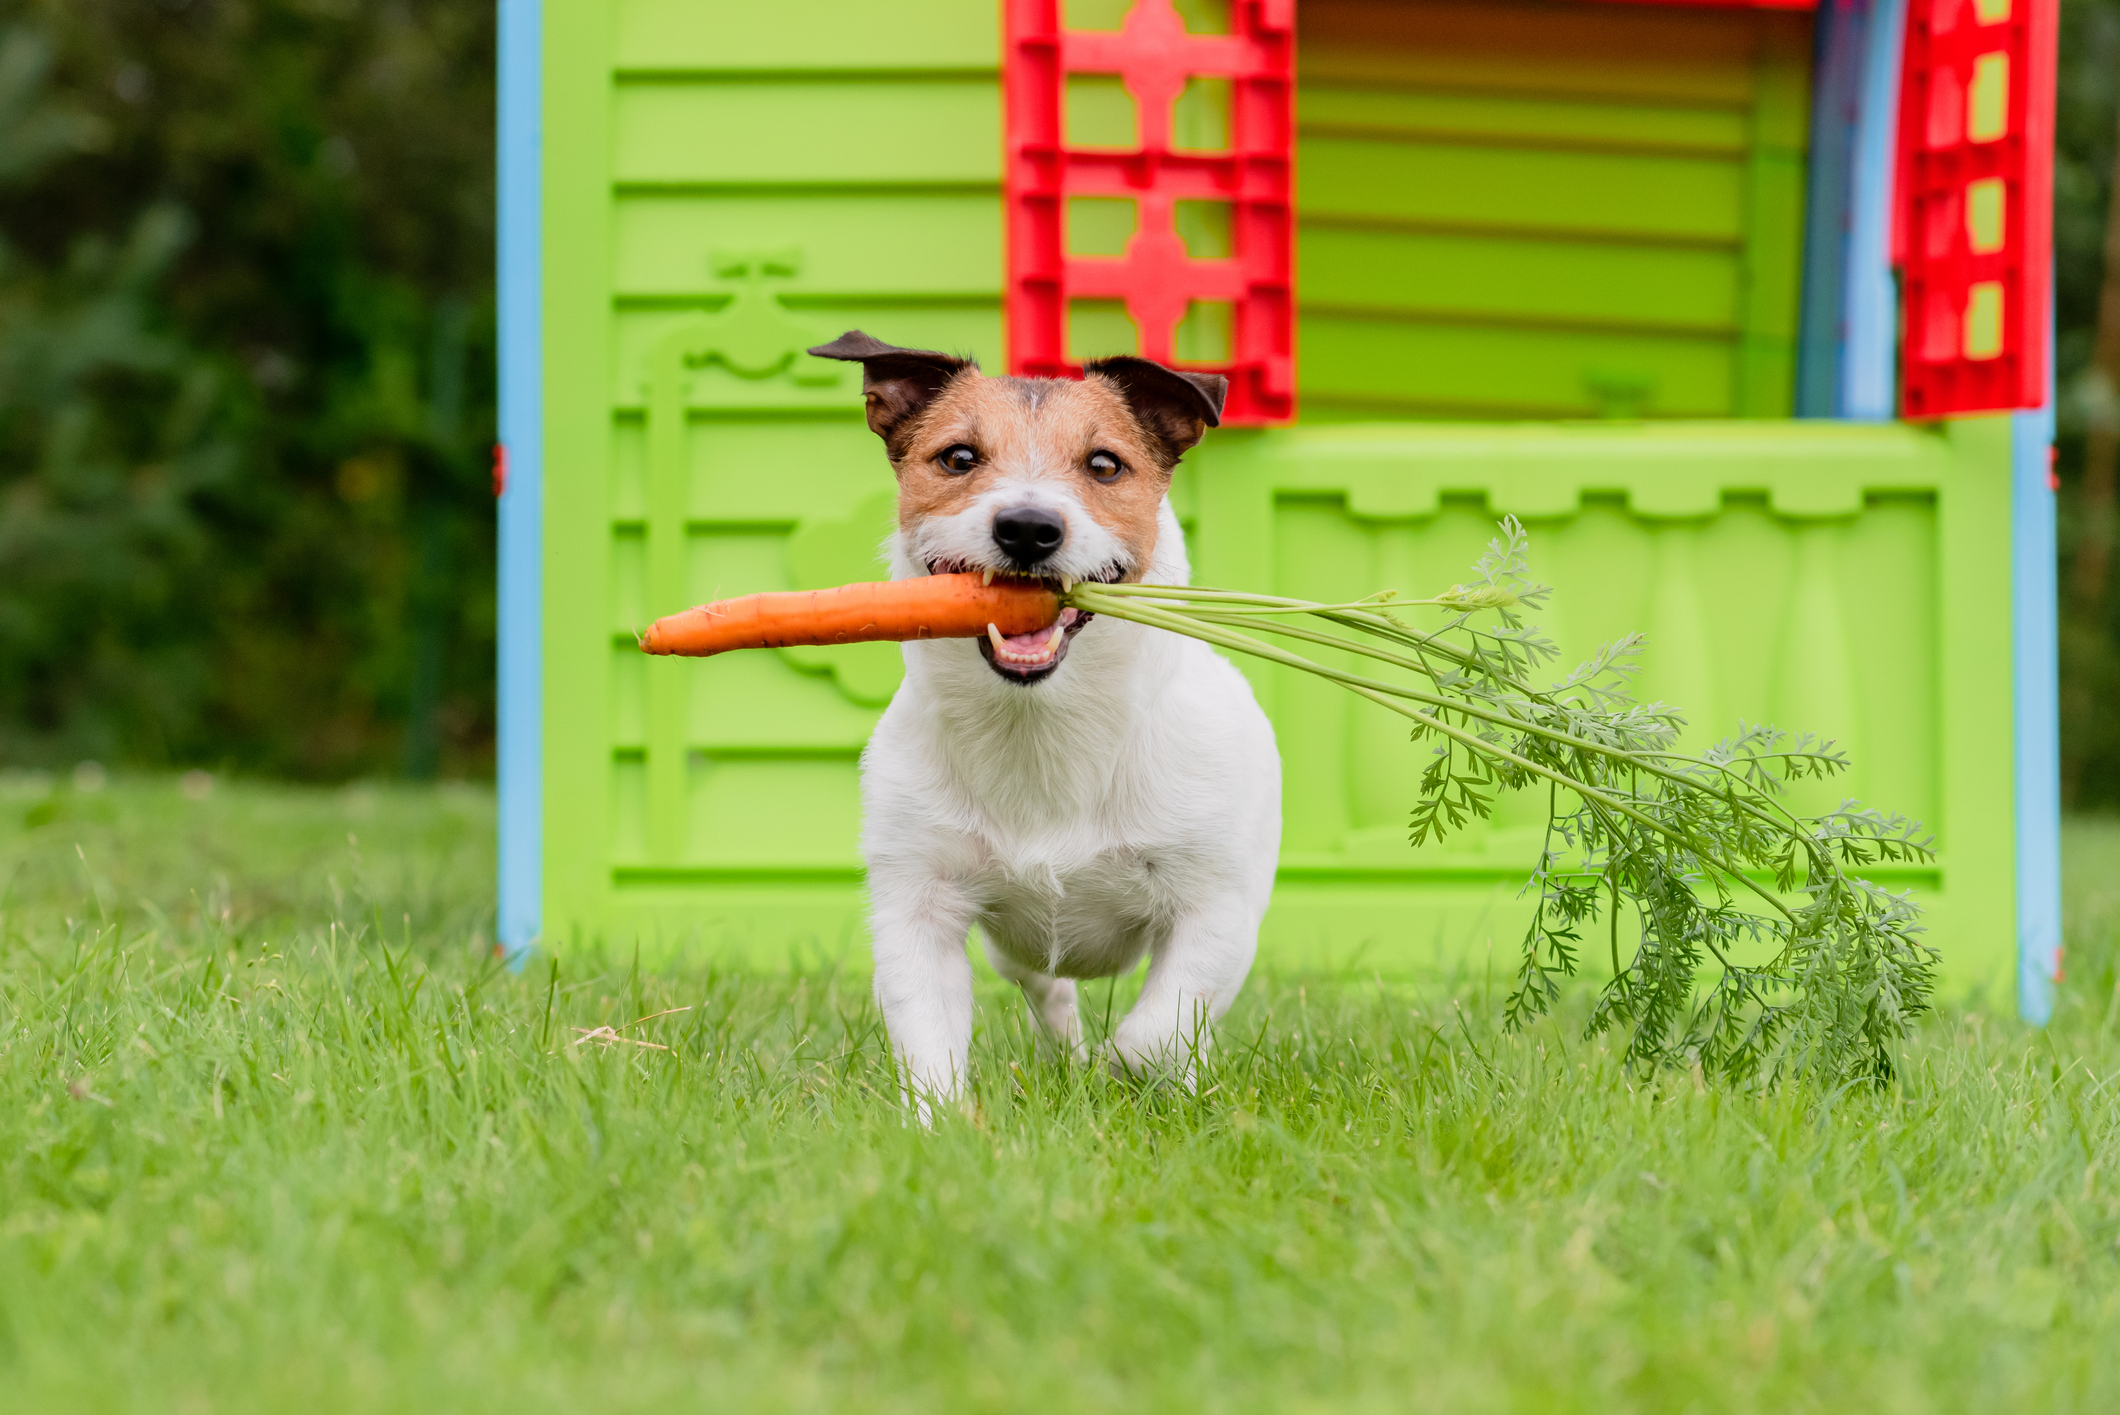 Des scientifiques démystifient l’affirmation selon laquelle les chiens sont « les plus sains » avec un régime végétalien